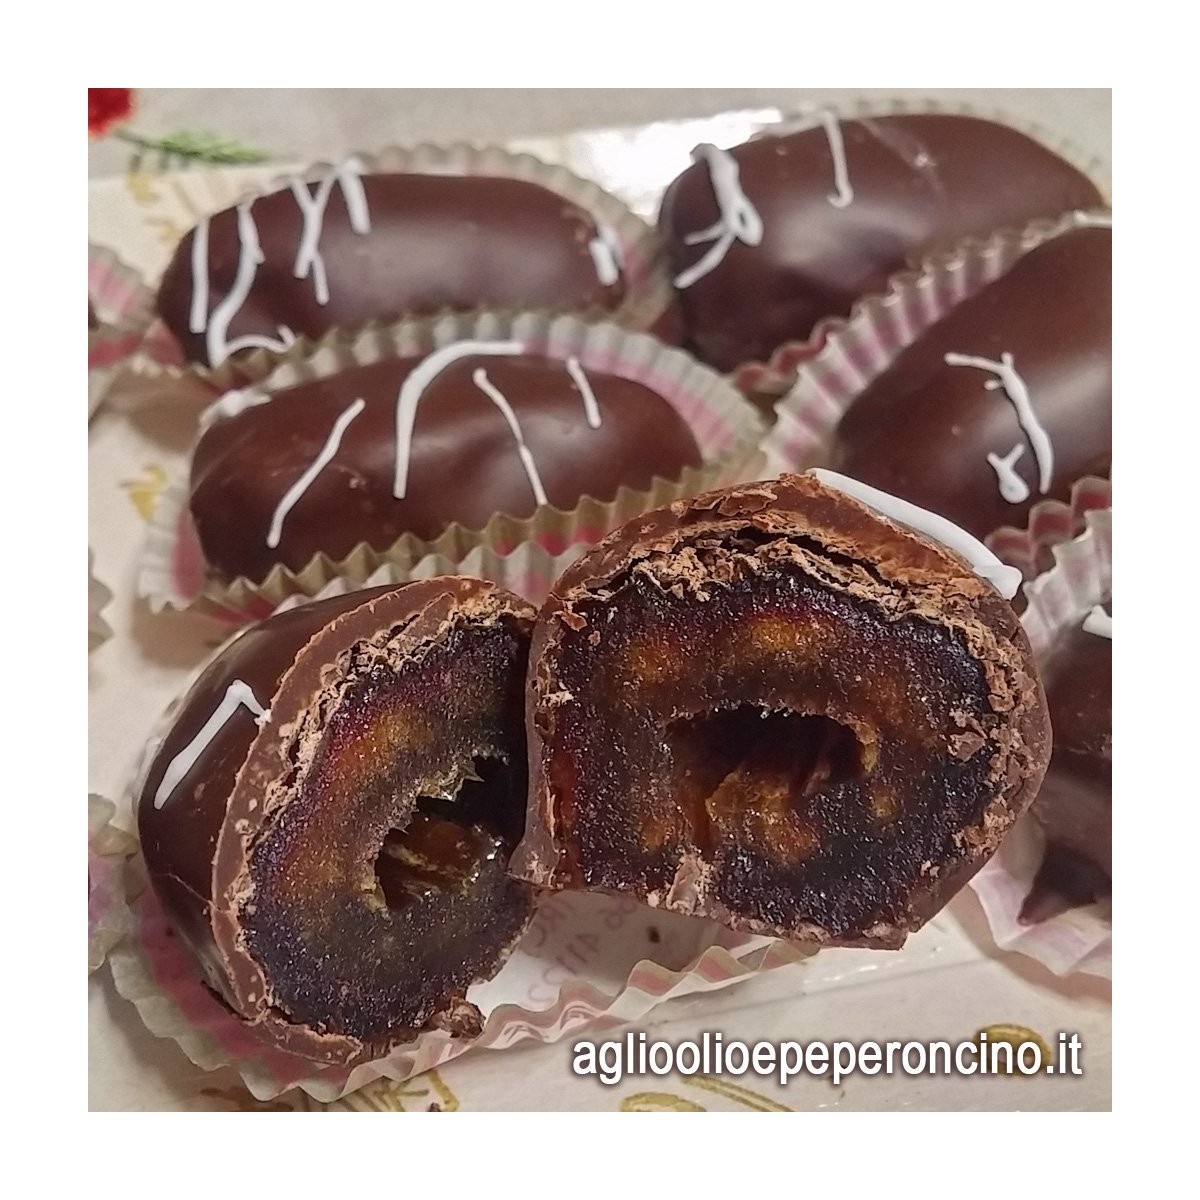 Datteri ricoperti al cioccolato- Specialità calabrese - Cardone dal 1846